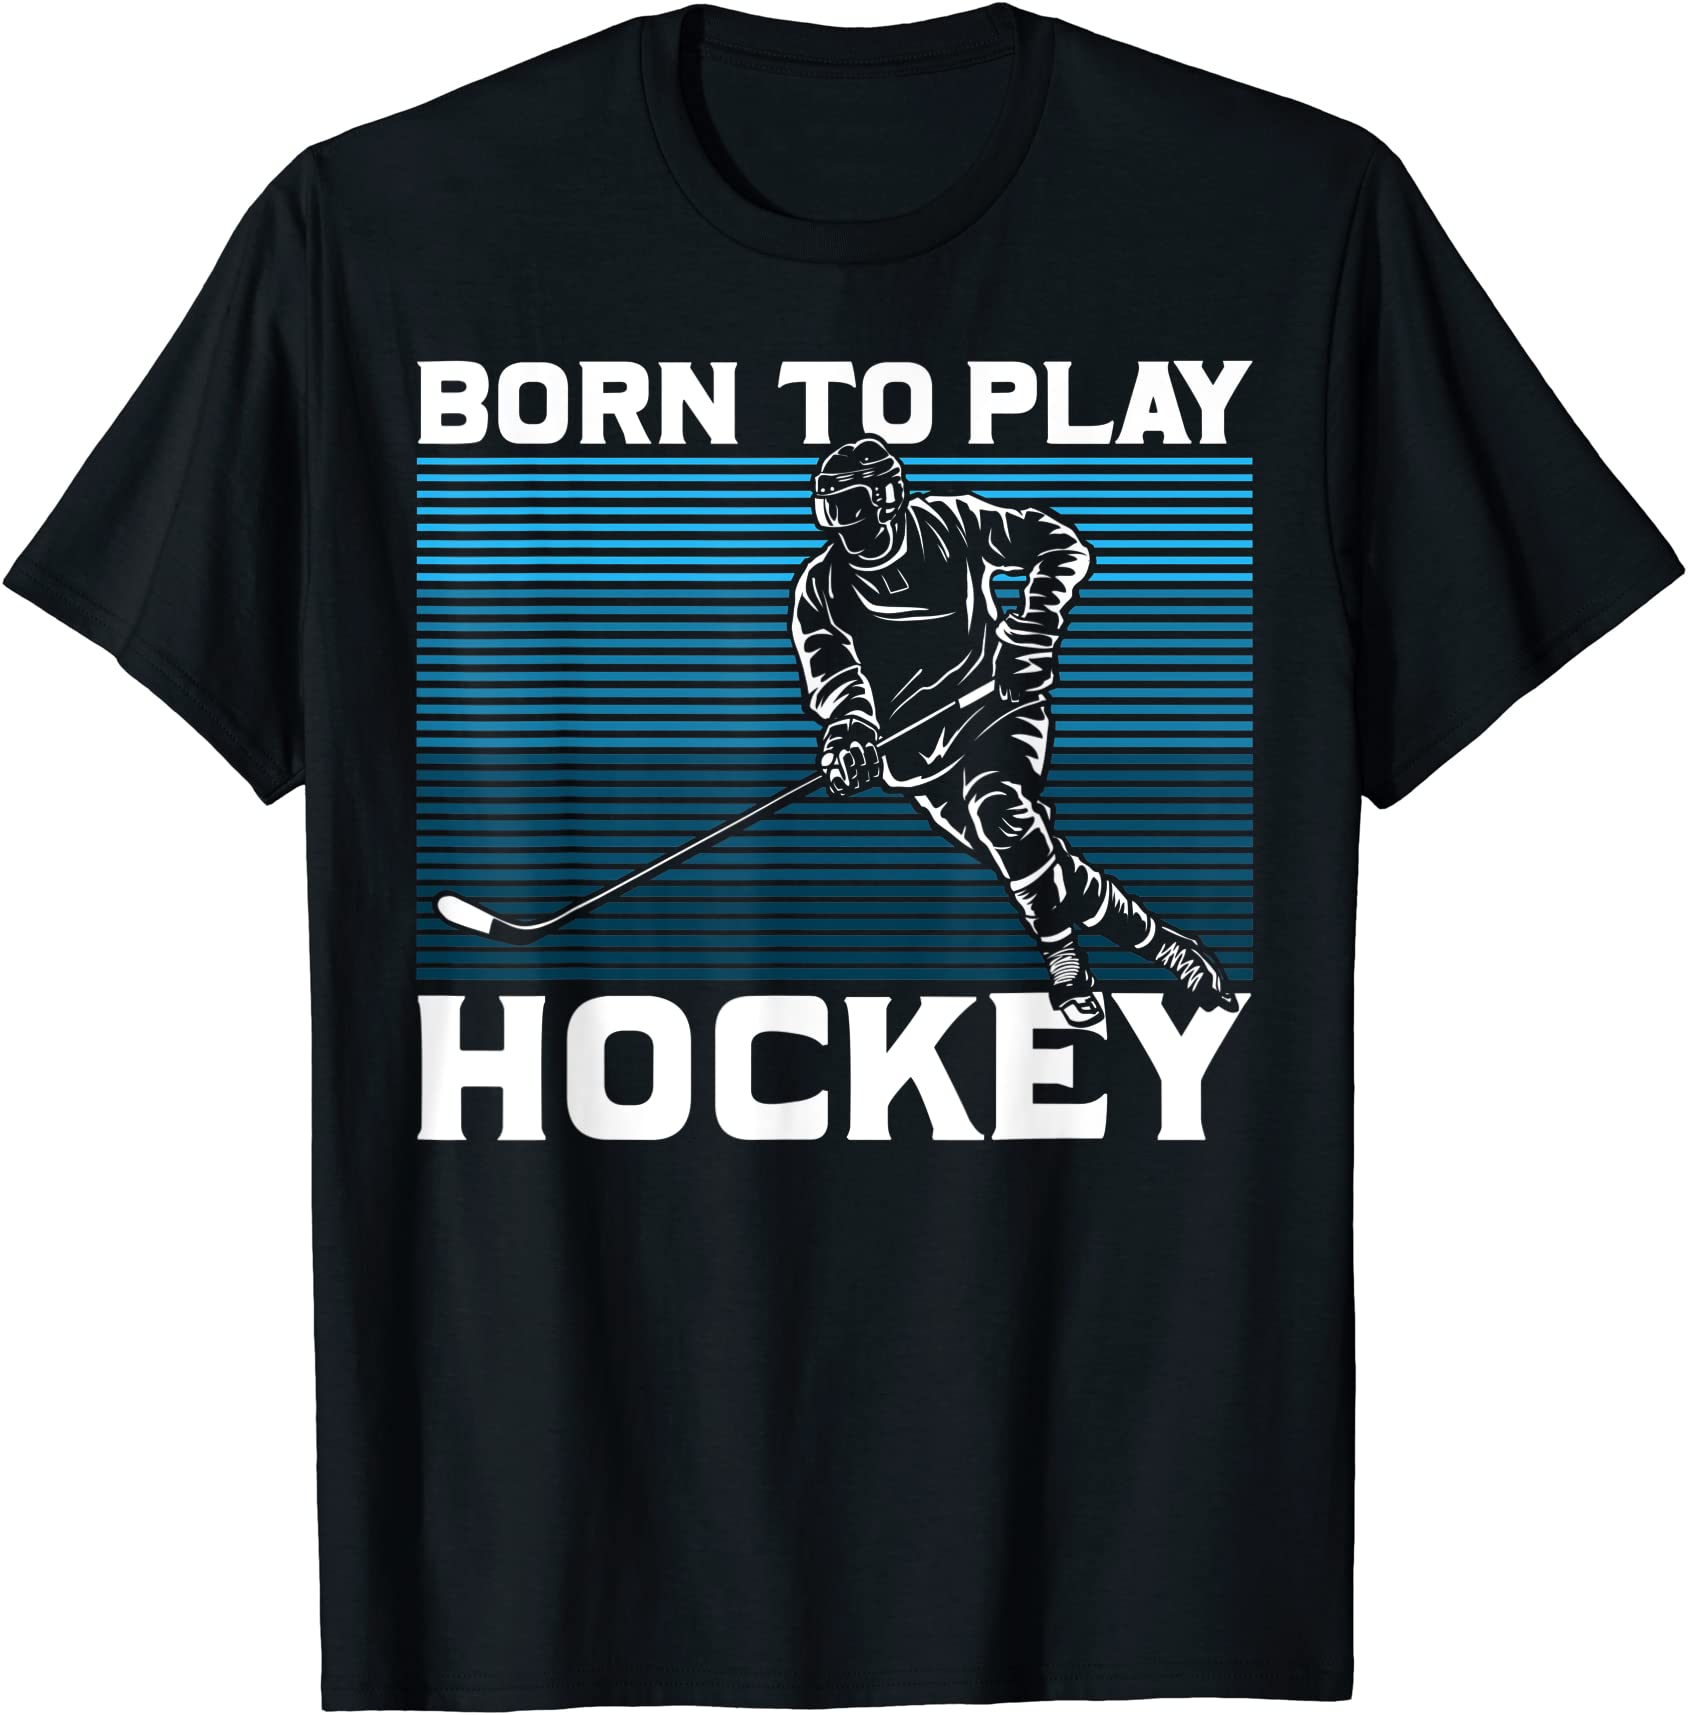 ice hockey goalie gift idea born to play hockey t shirt men - Buy t ...